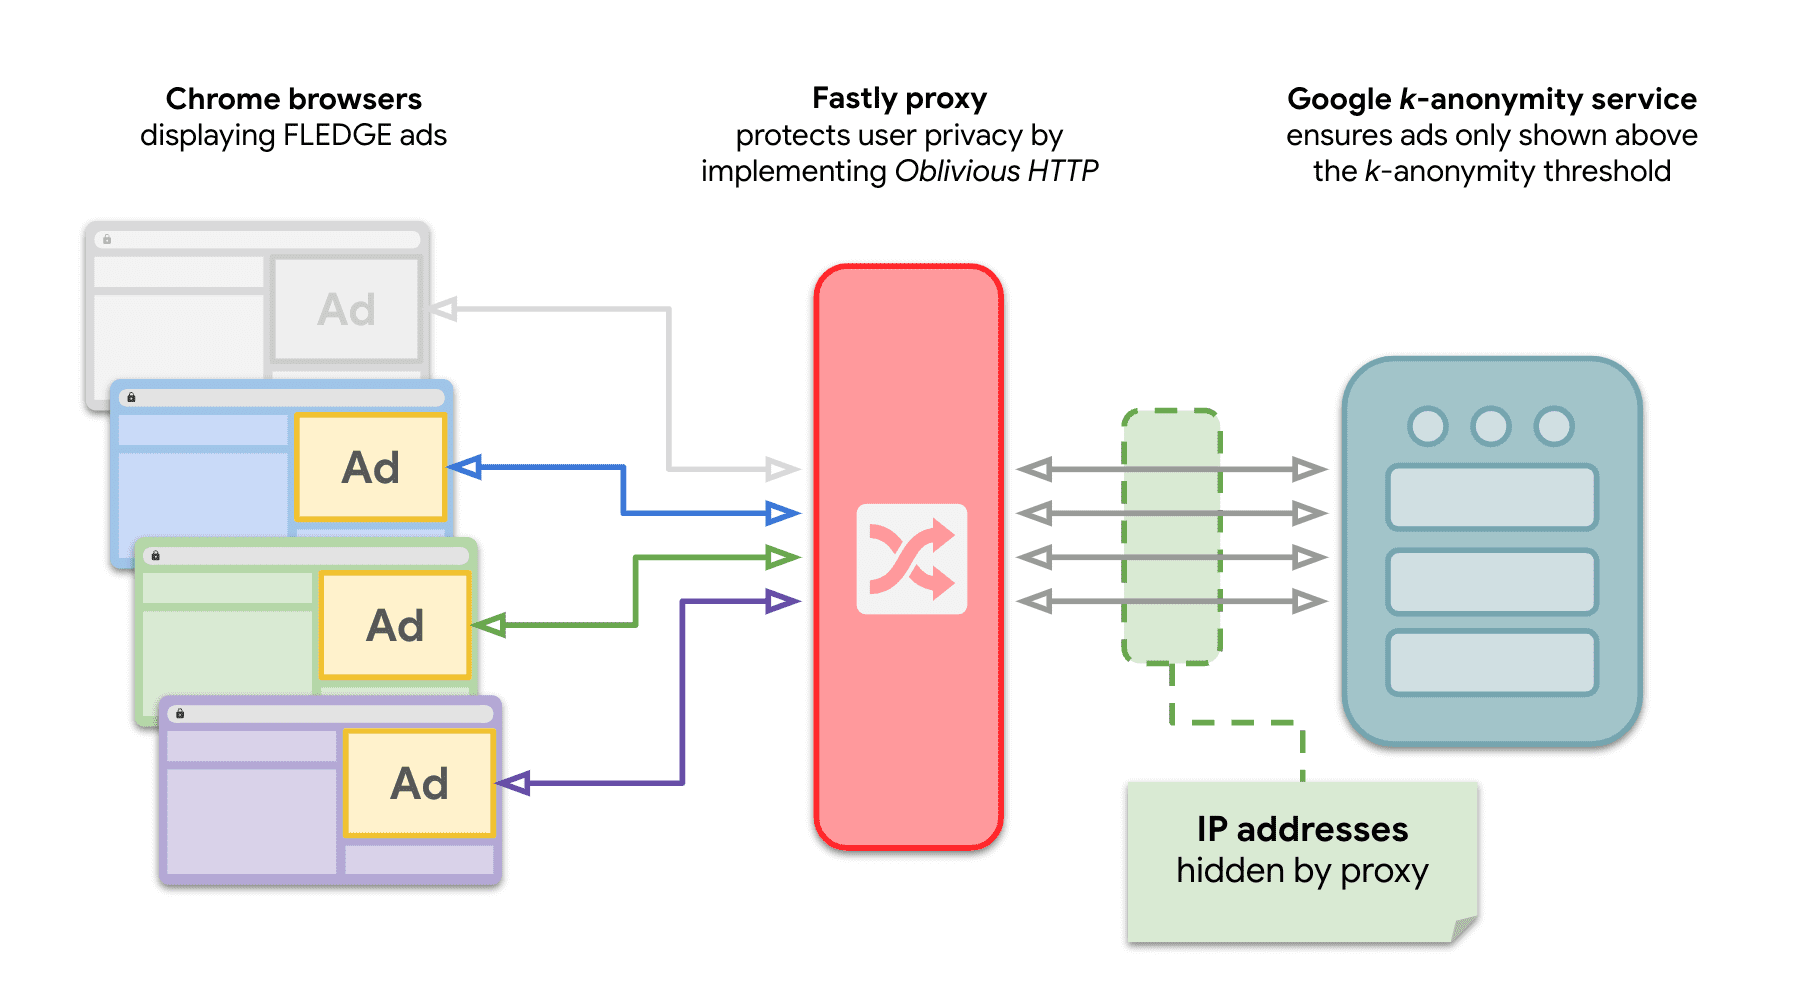 Sơ đồ cho thấy nhiều trang web trên Chrome gửi yêu cầu đến máy chủ k-anonymity để phân phát quảng cáo FLEDGE với hoạt động chuyển tiếp OHTTP ở giữa.